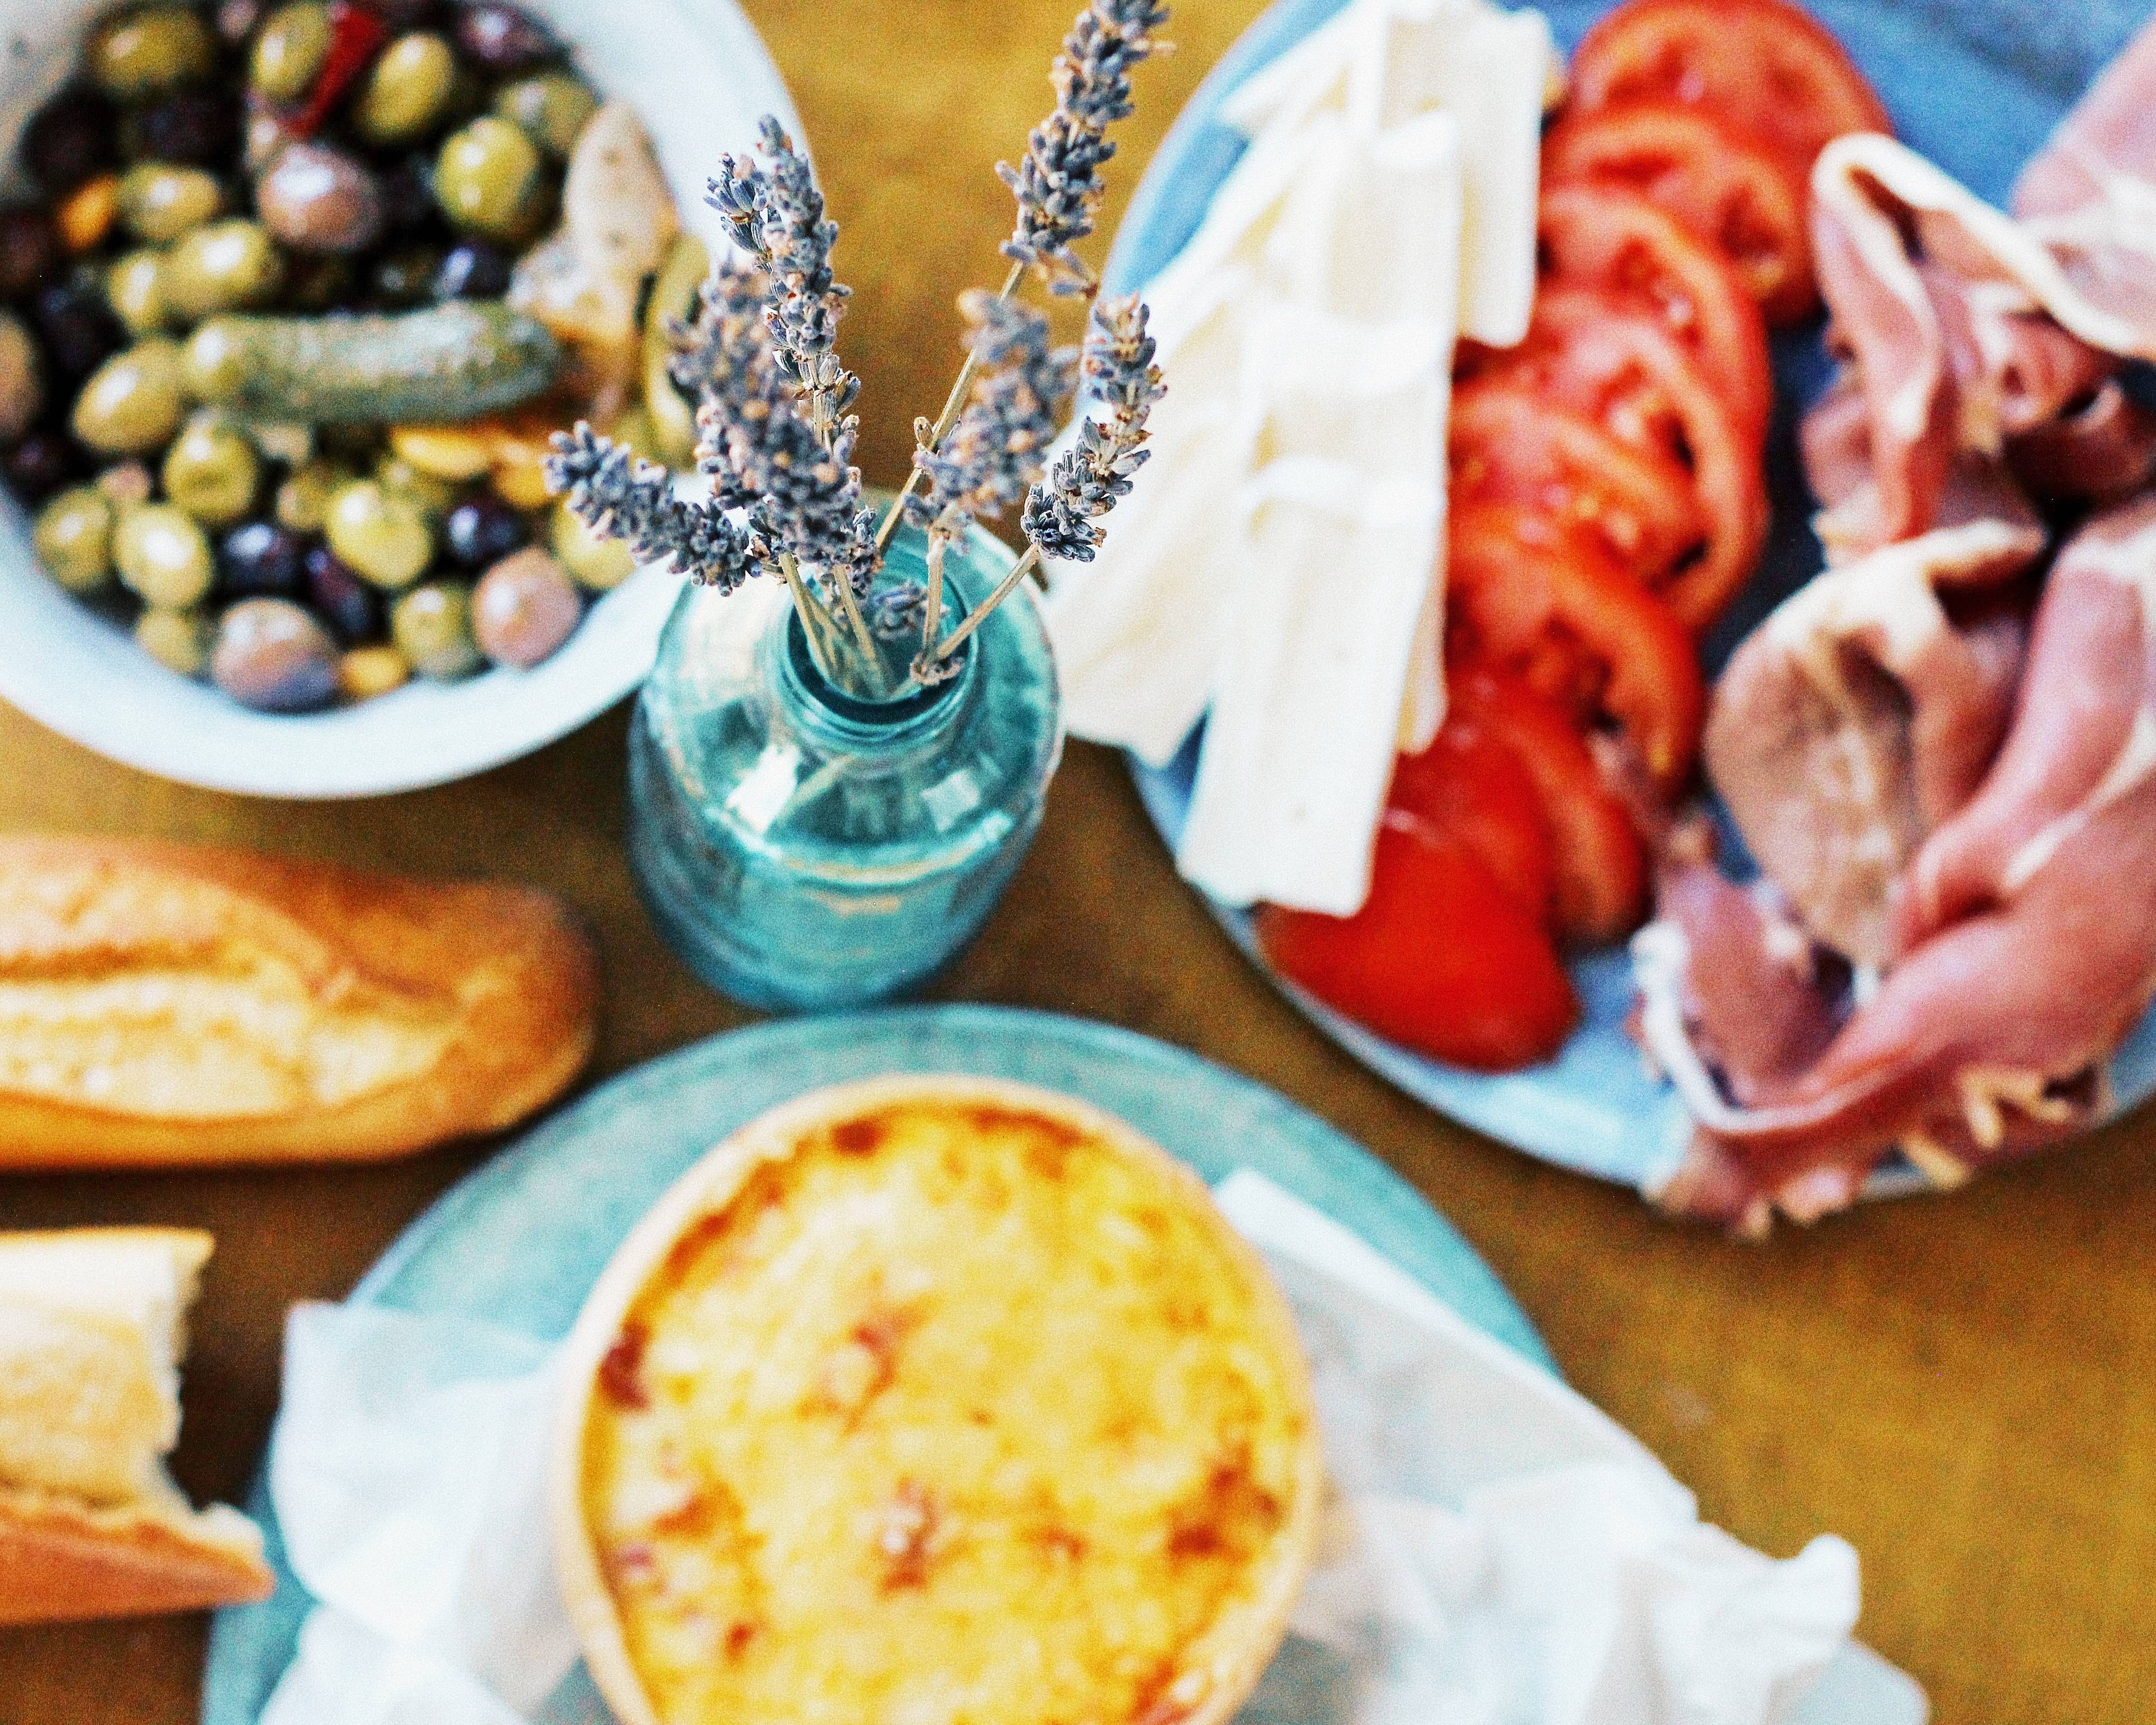 Autour de la gastronomie provençale : visites, dégustations, cours de cuisine et rencontres